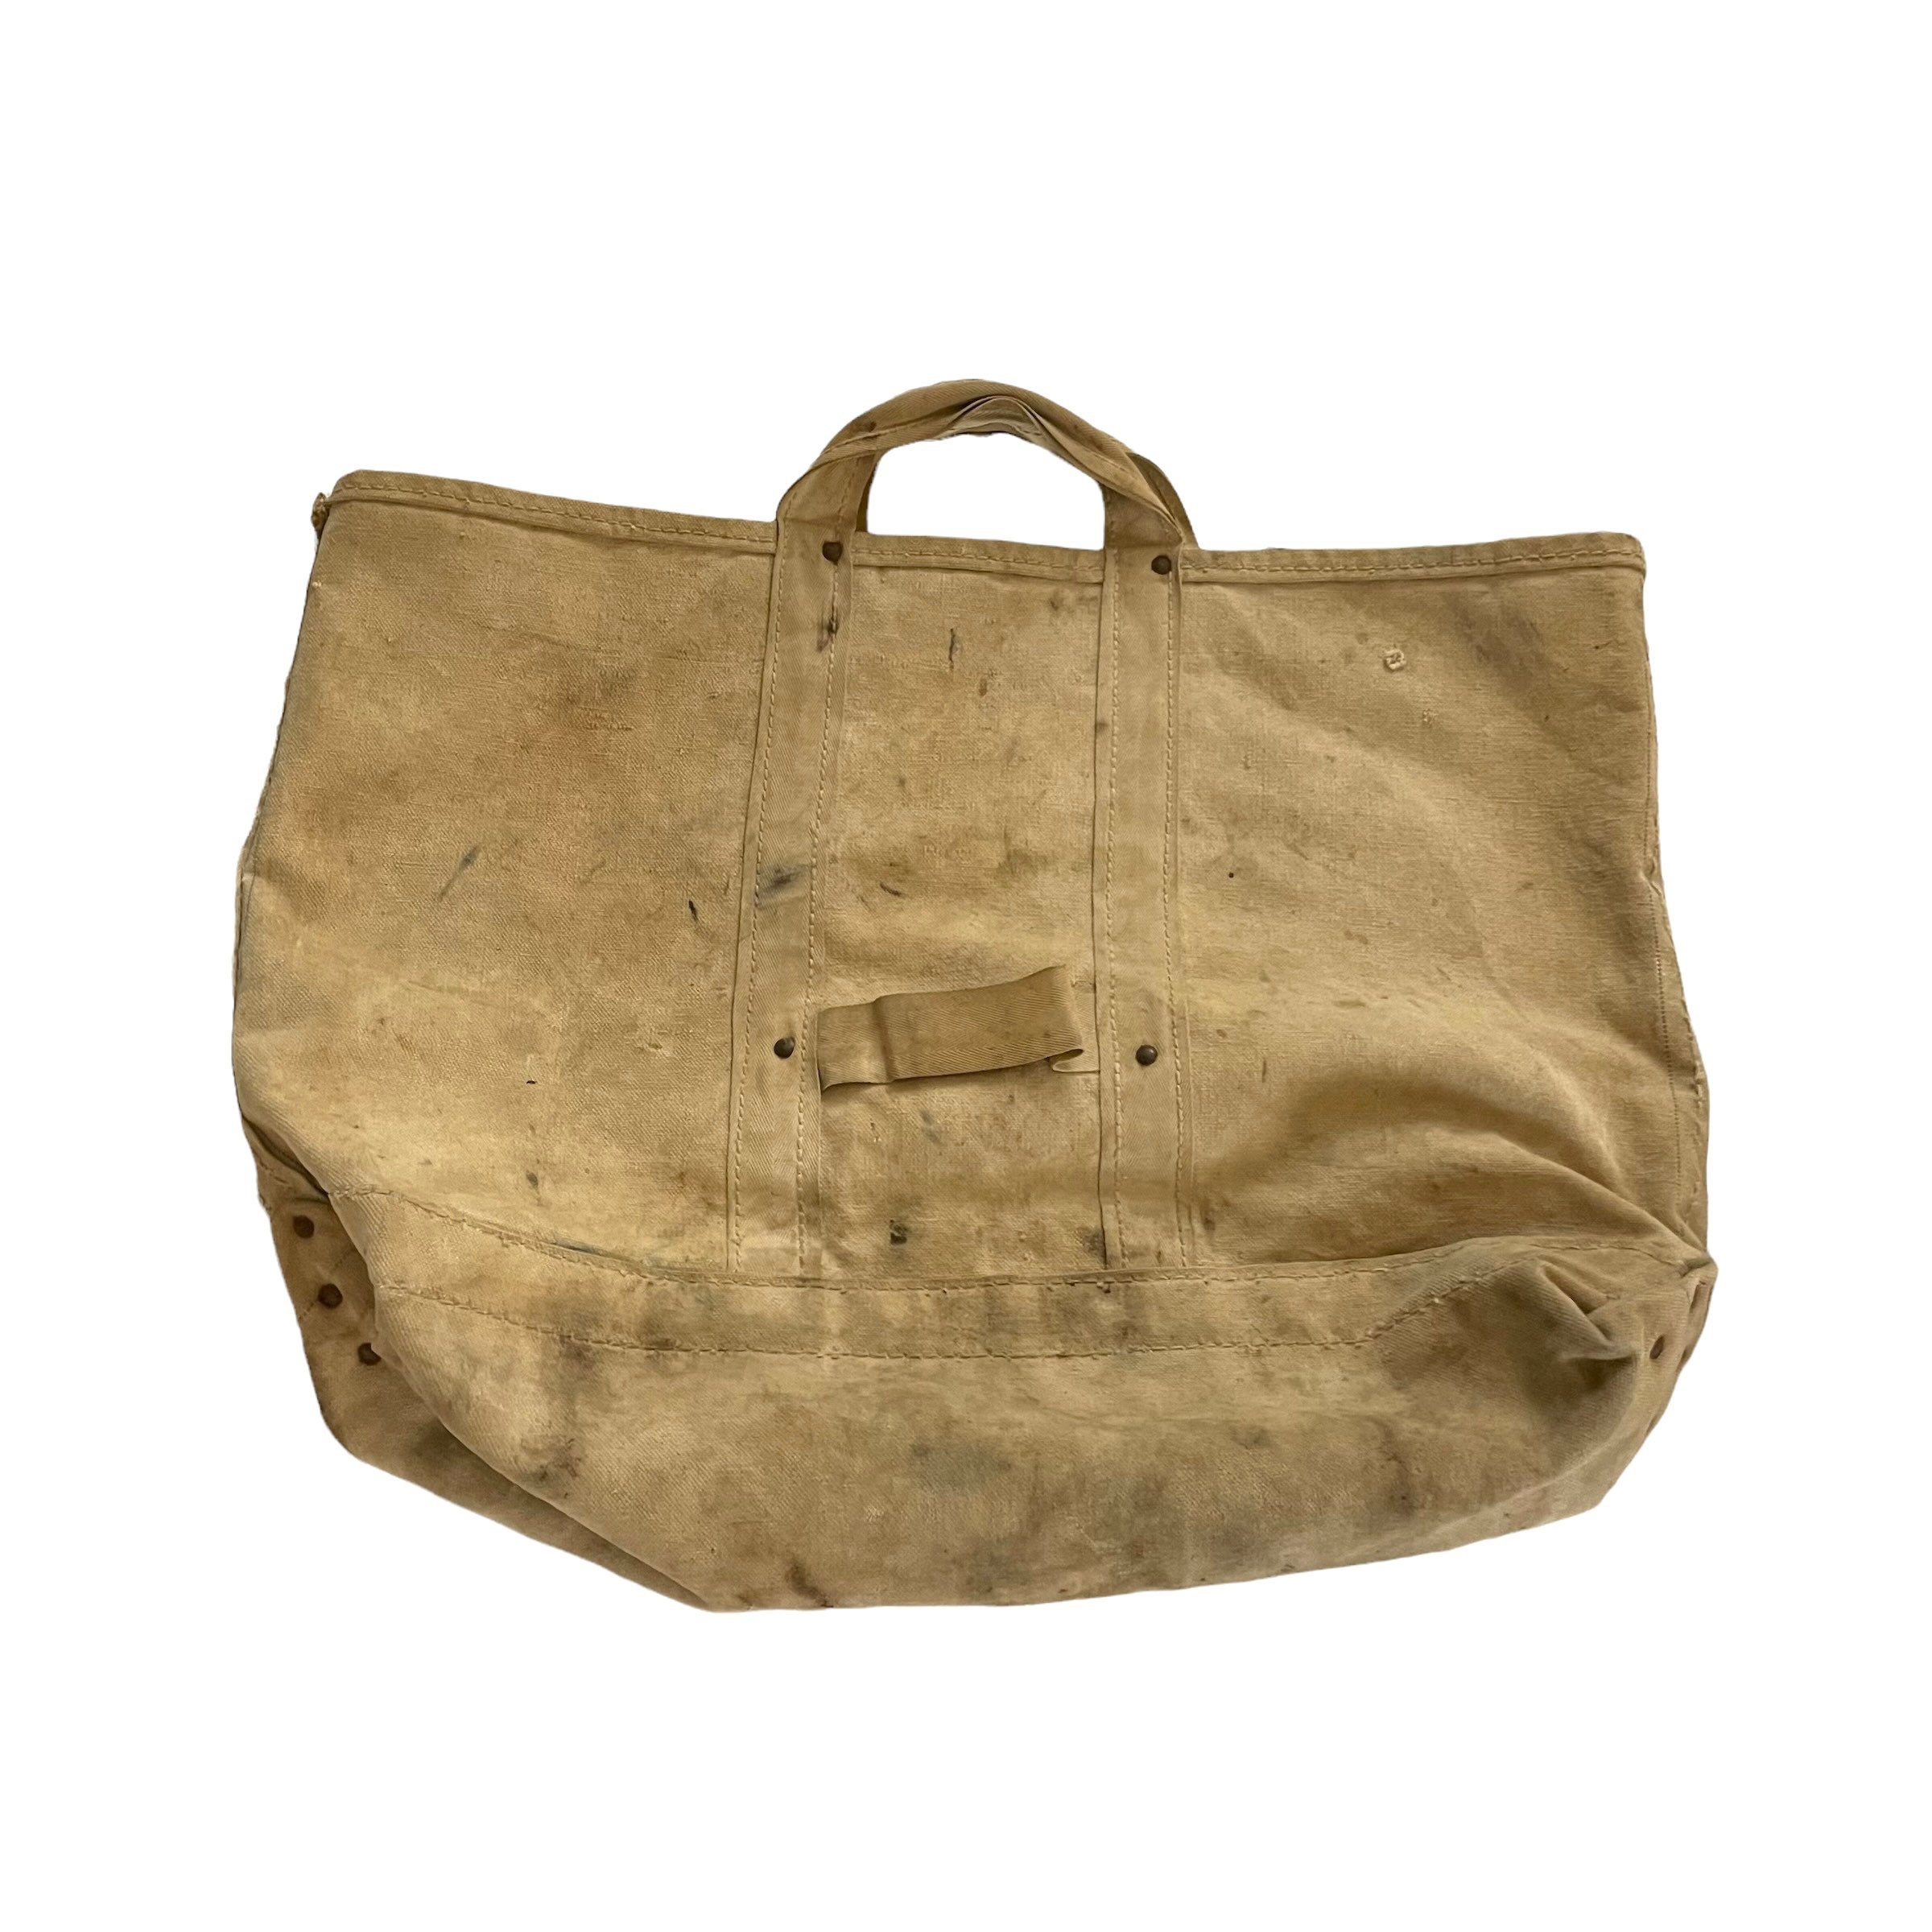 Vintage Ll Bean Tote Bag Netherlands, SAVE 45% 